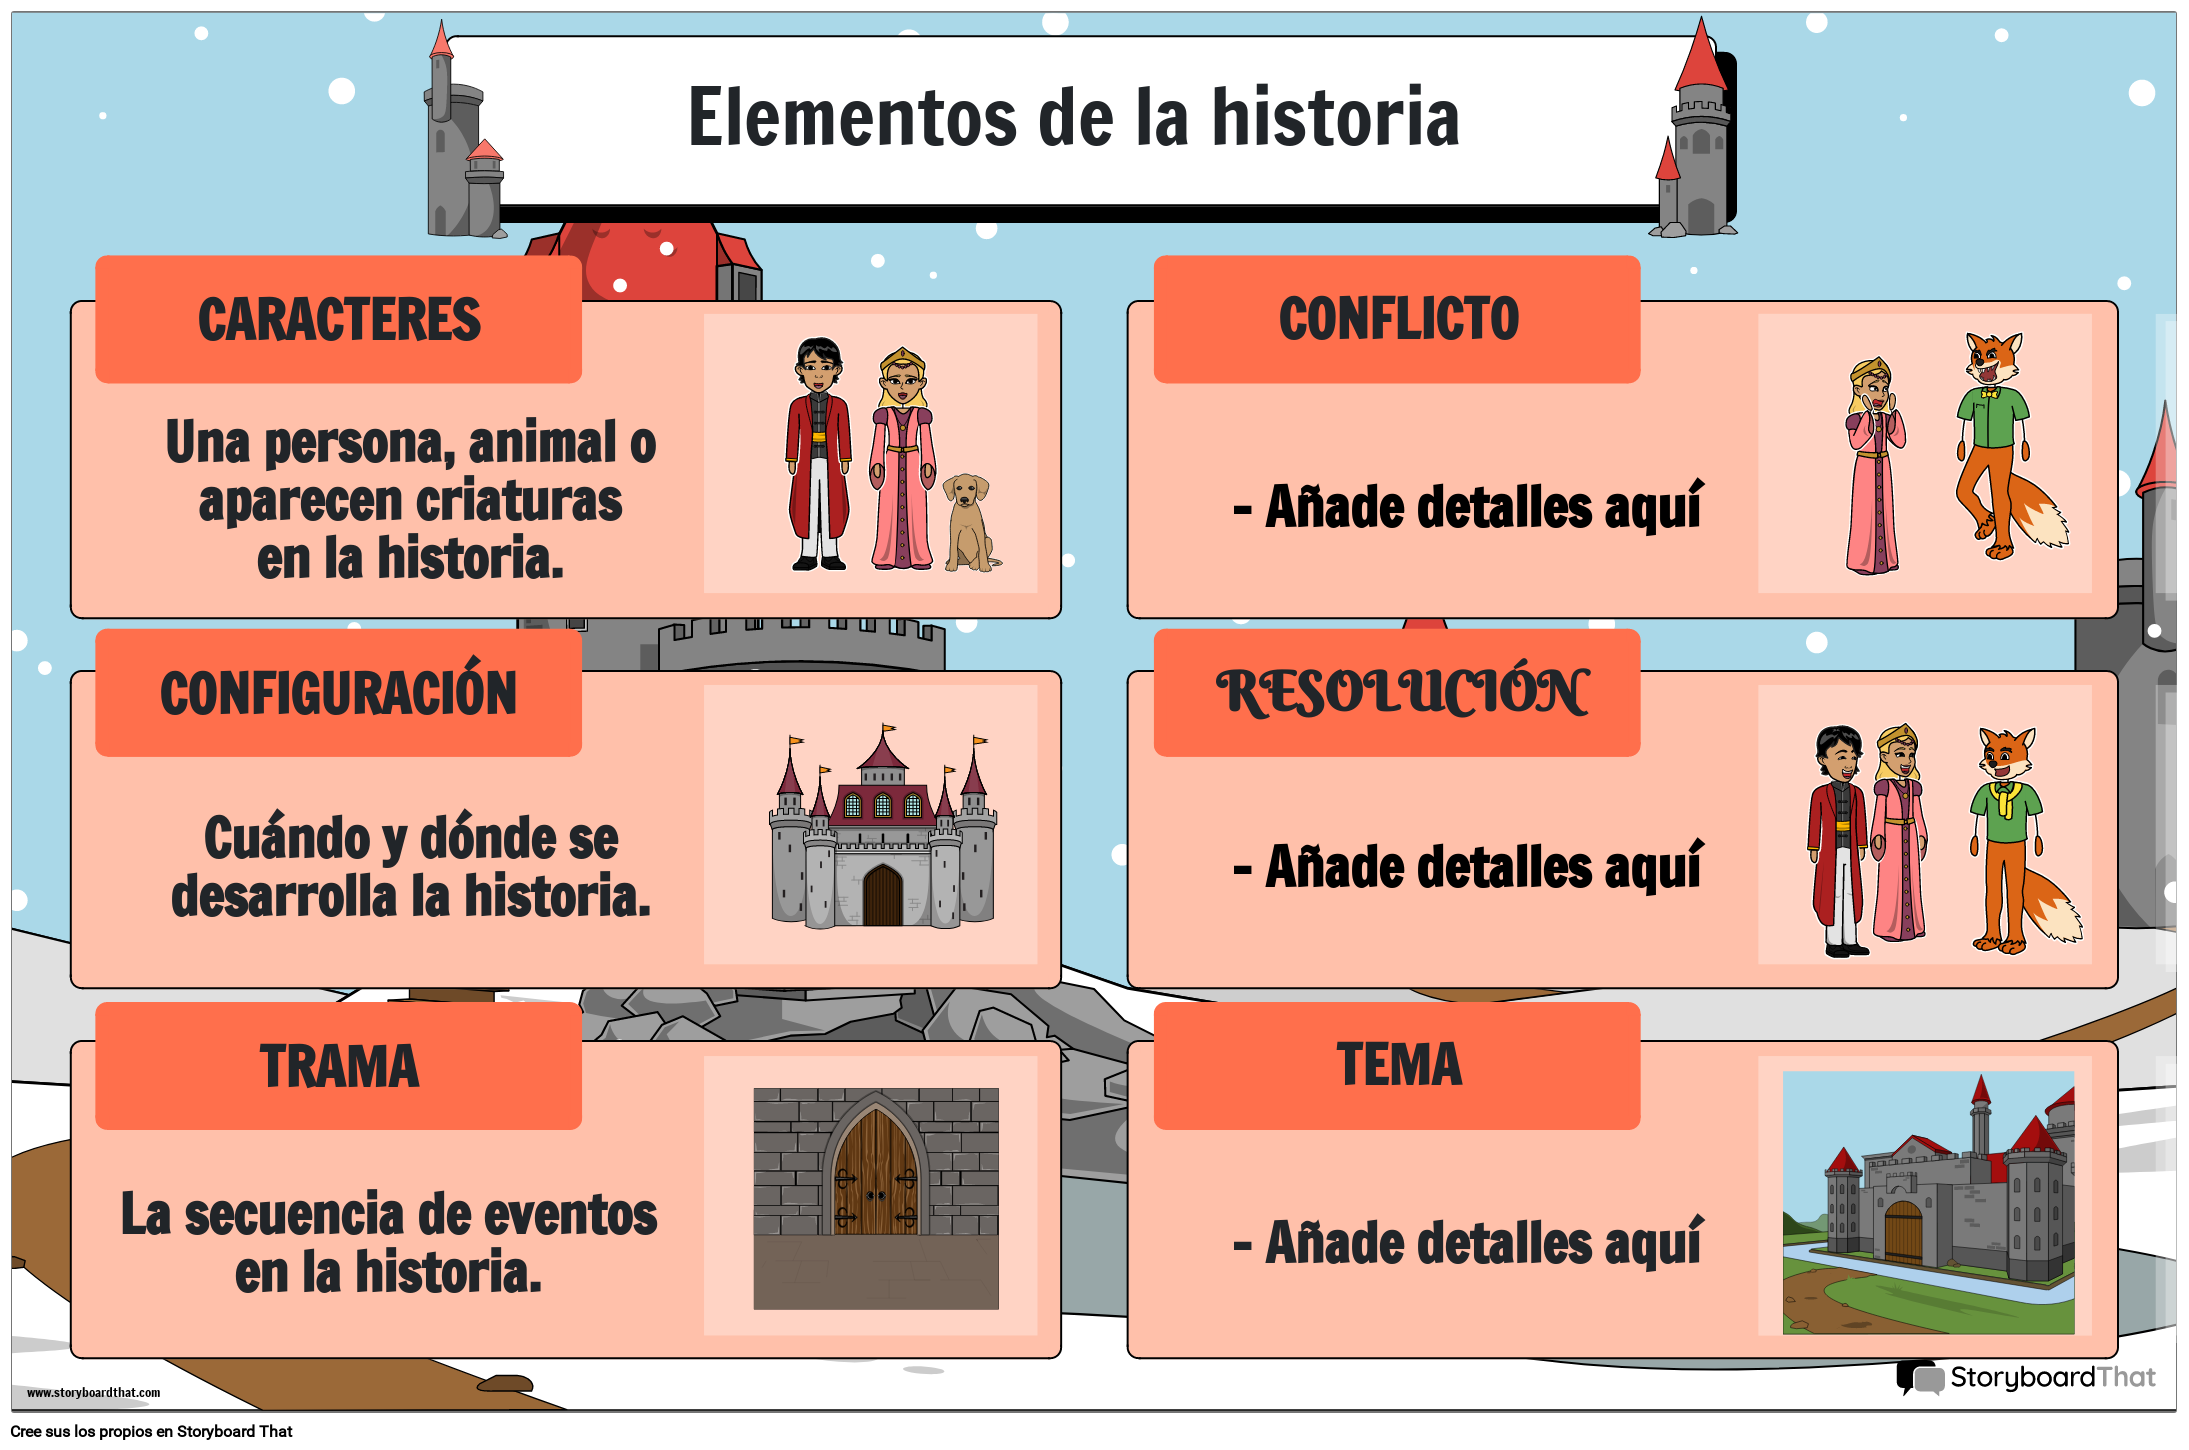 TEMÁTICA DEL CASTILLO - ELEMENTOS DEL CARTEL DE LA HISTORIA